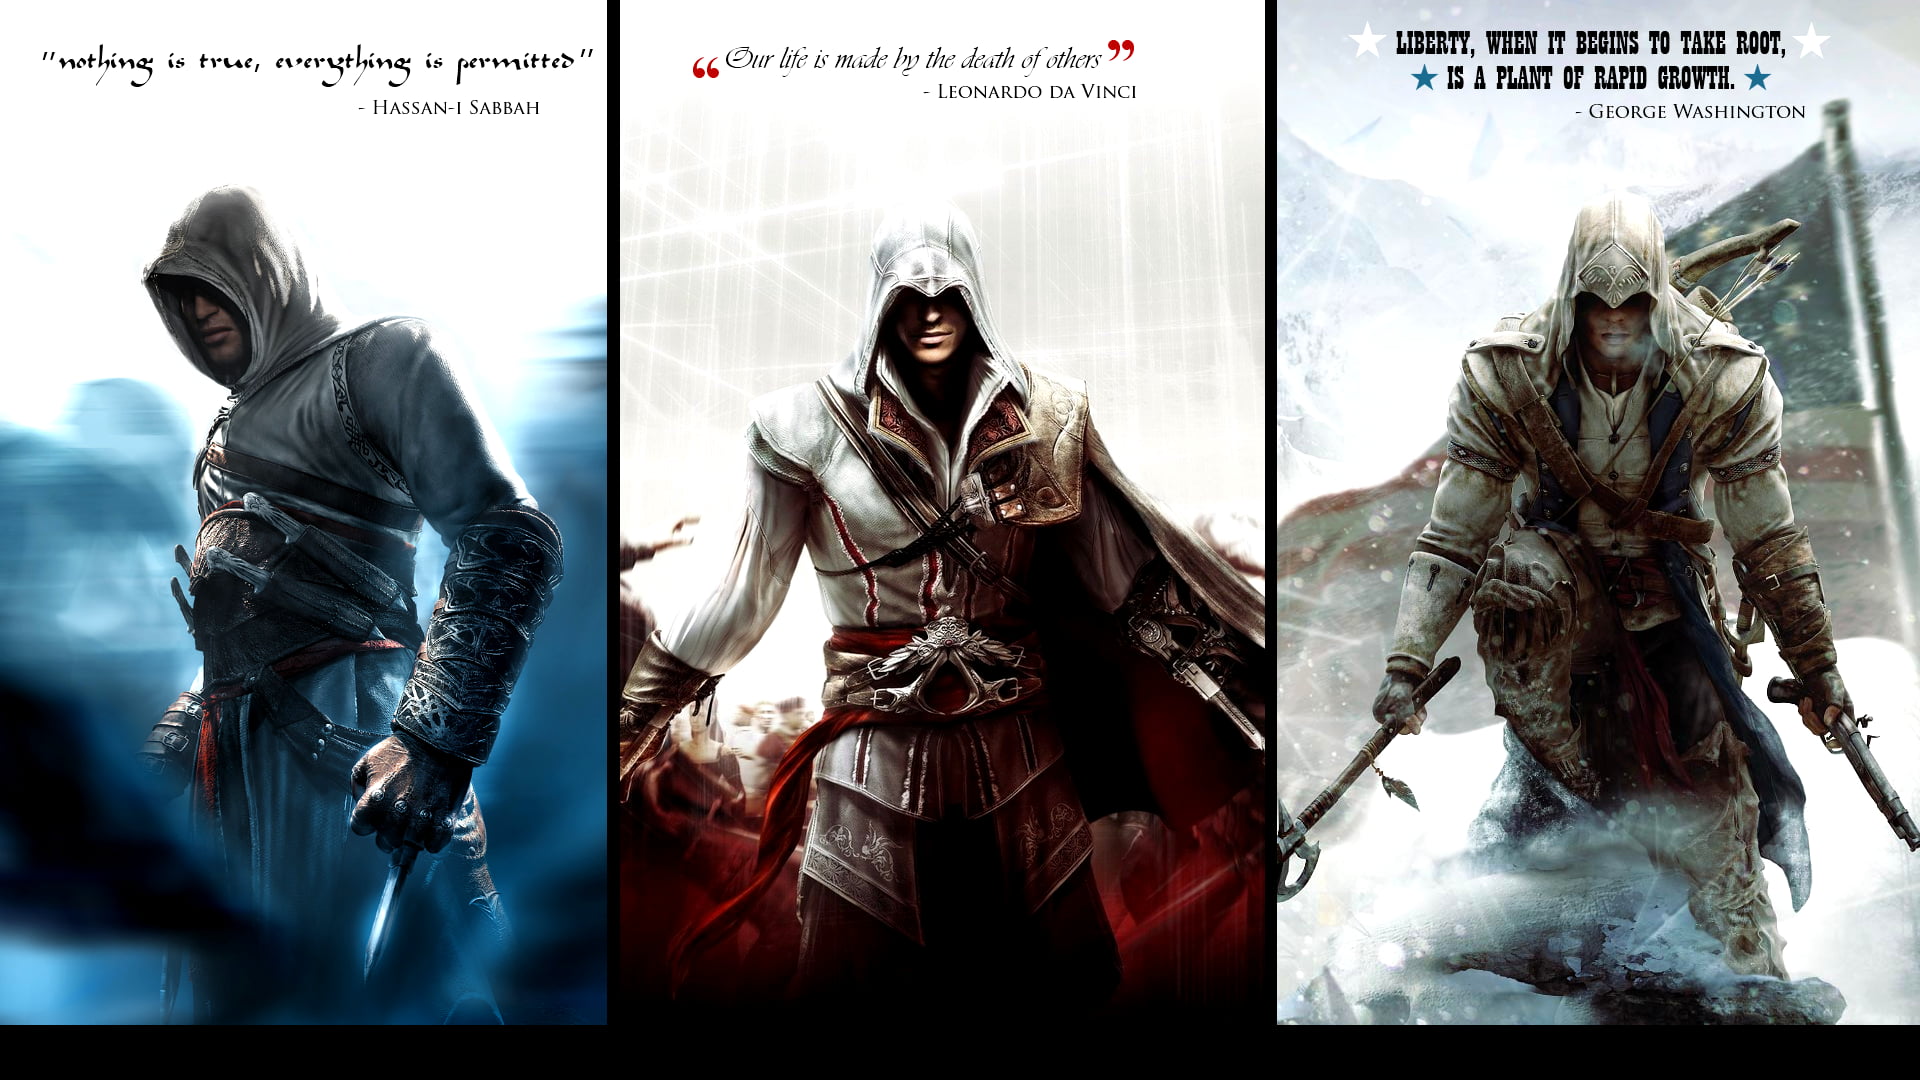 Assassin's Creed, Ezio Auditore da Firenze, video games, Assassin's Creed 2